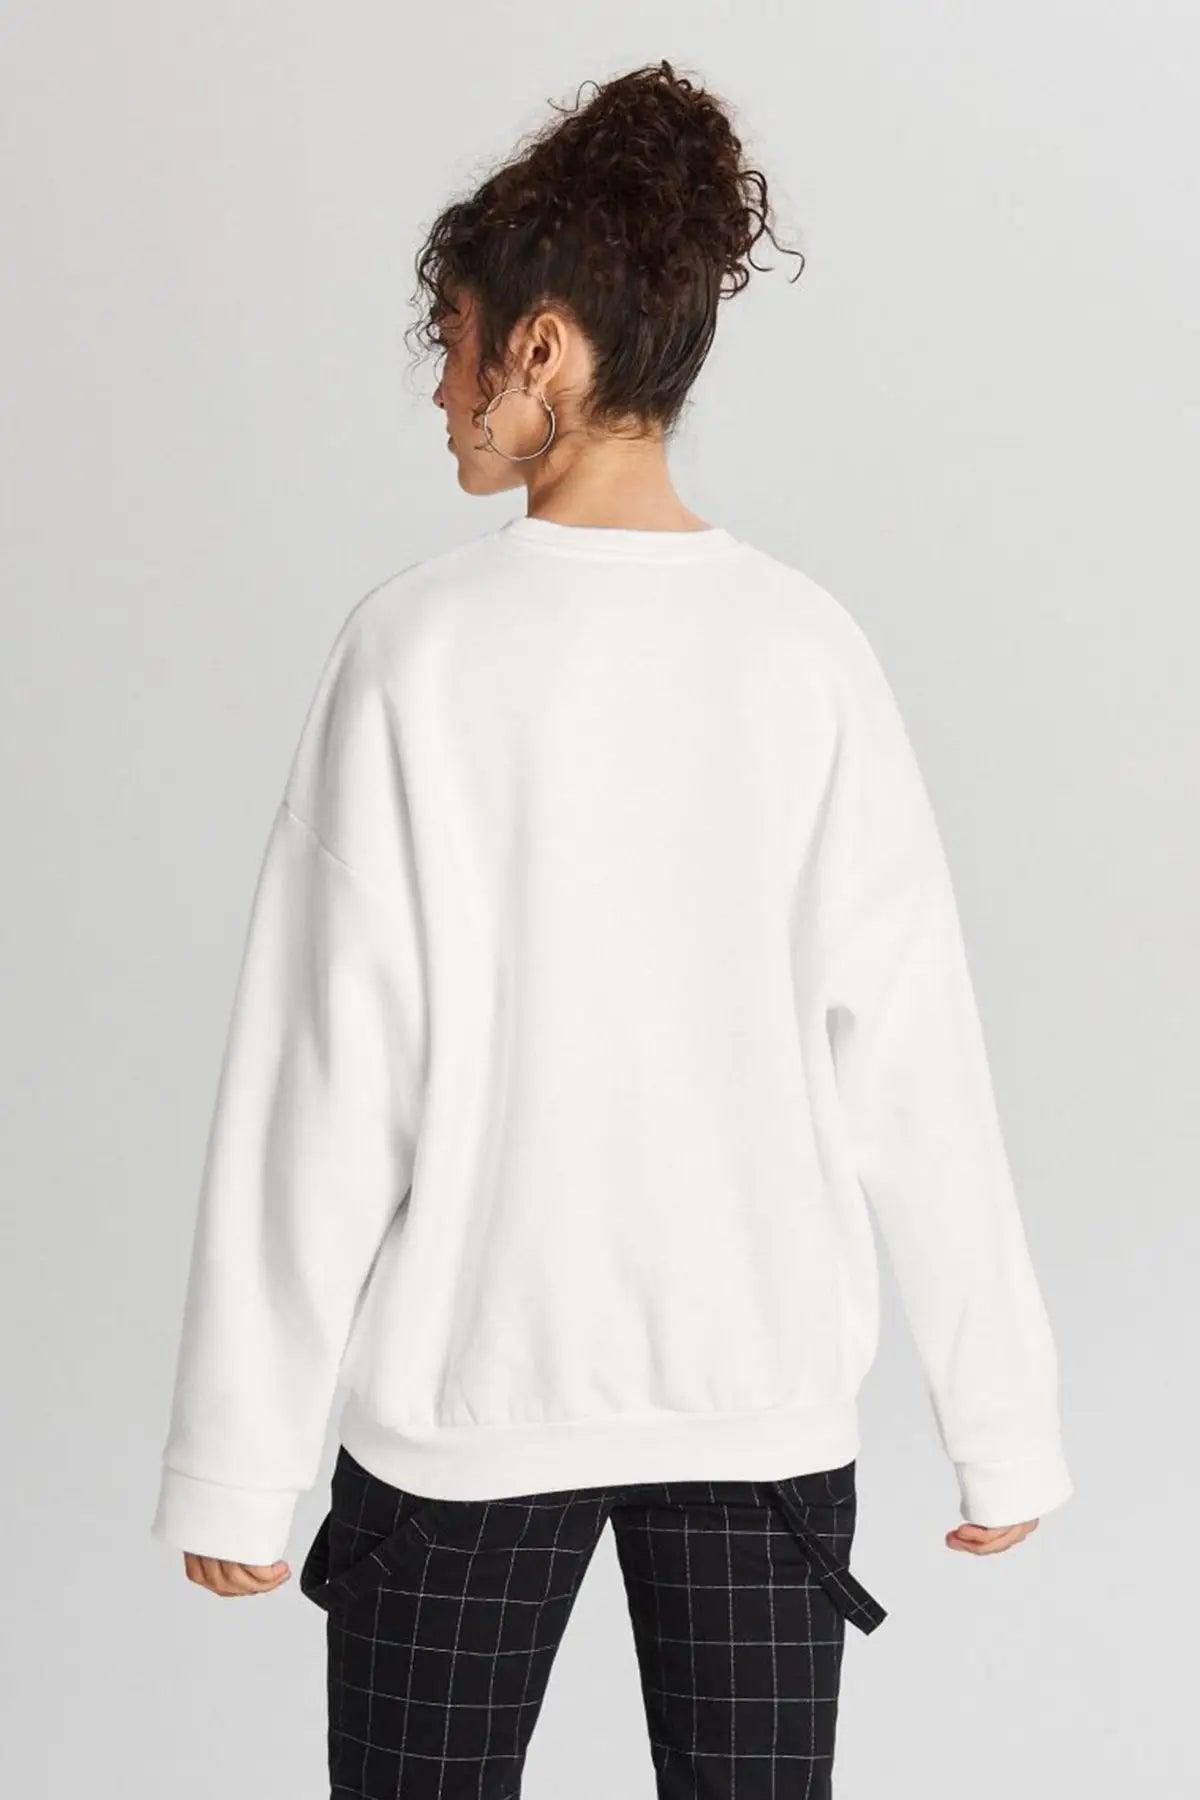 NYC Oversize Kadın Sweatshirt - PΛSΛGE